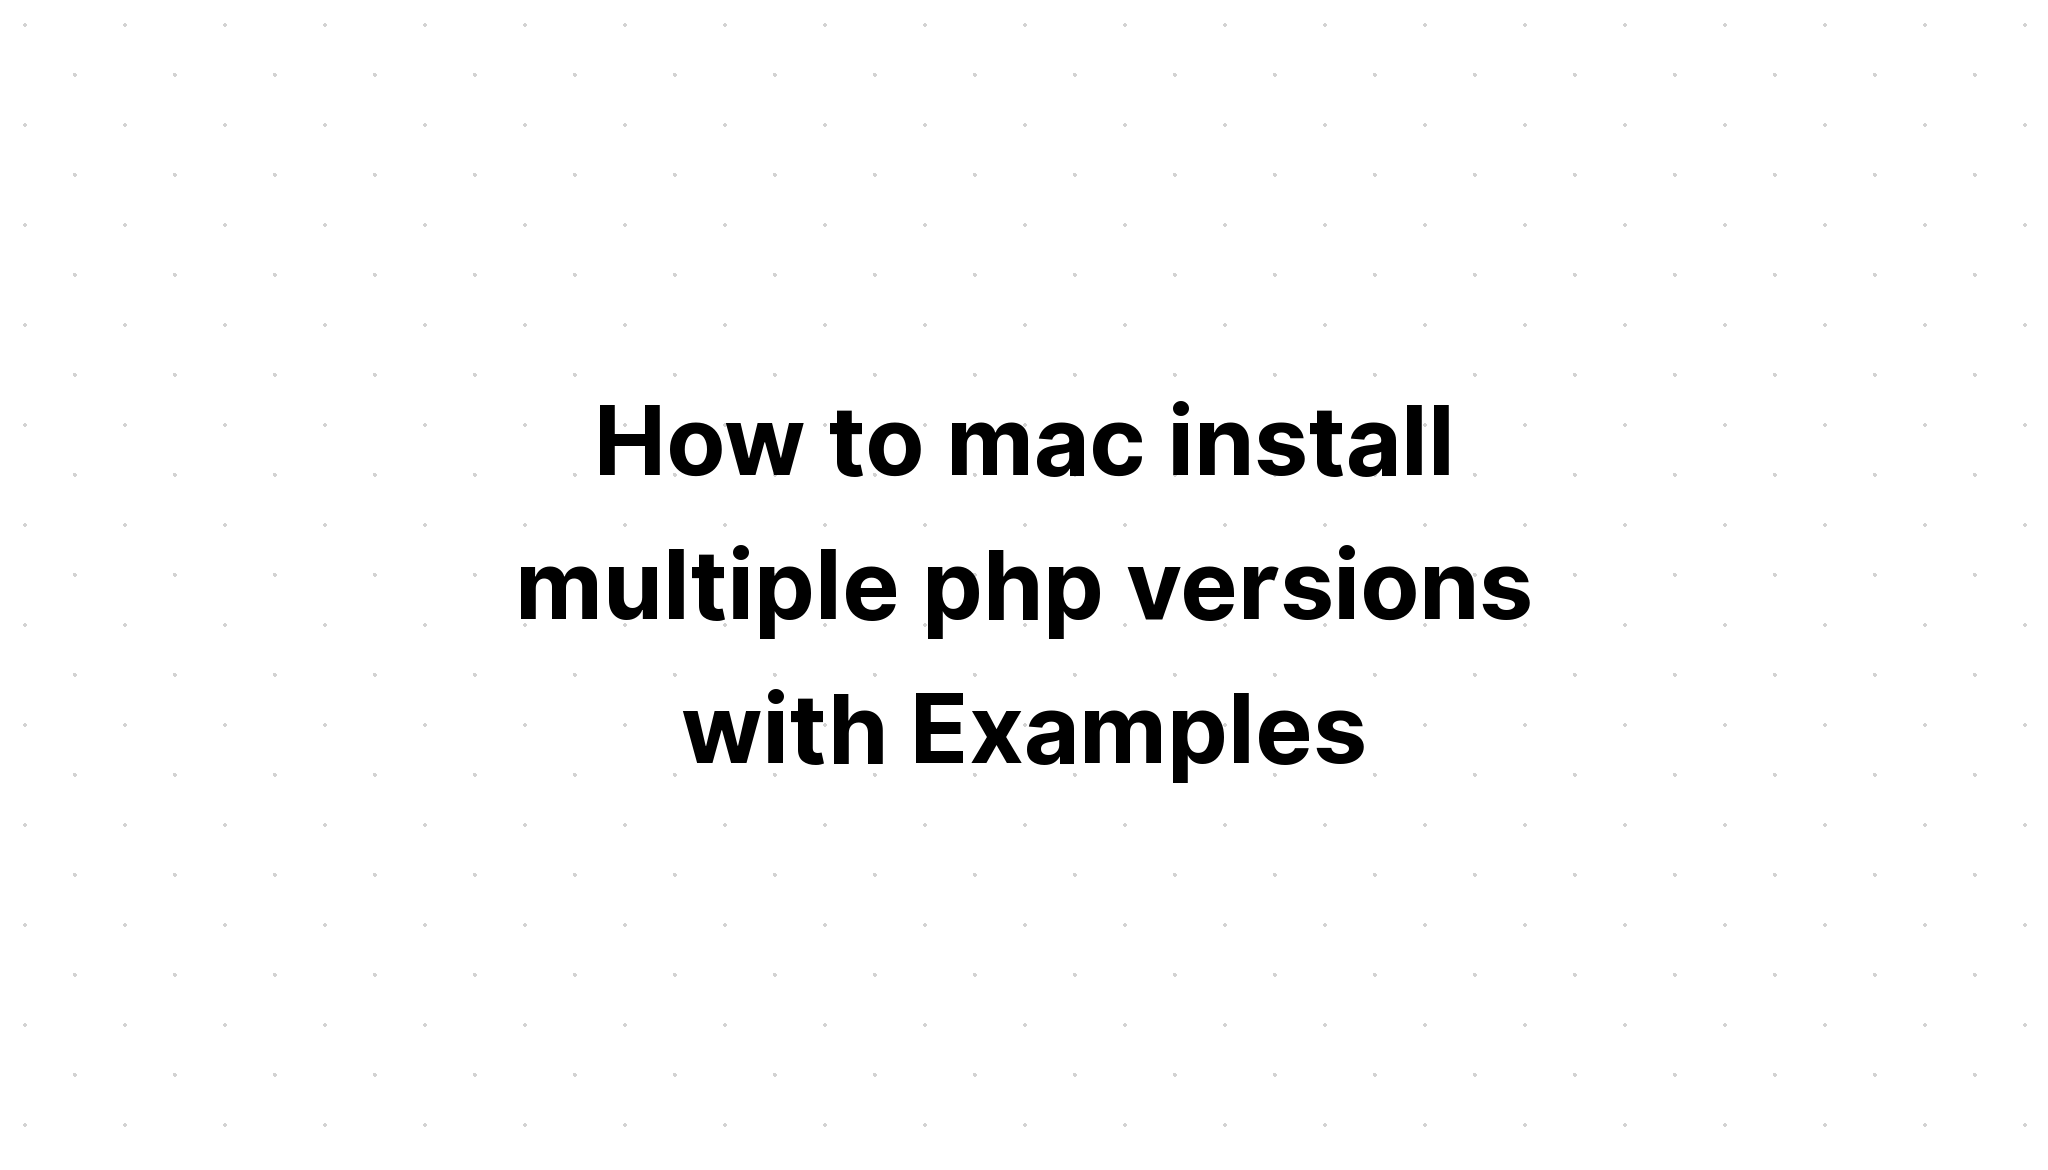 Cara mac menginstal beberapa versi php dengan Contoh